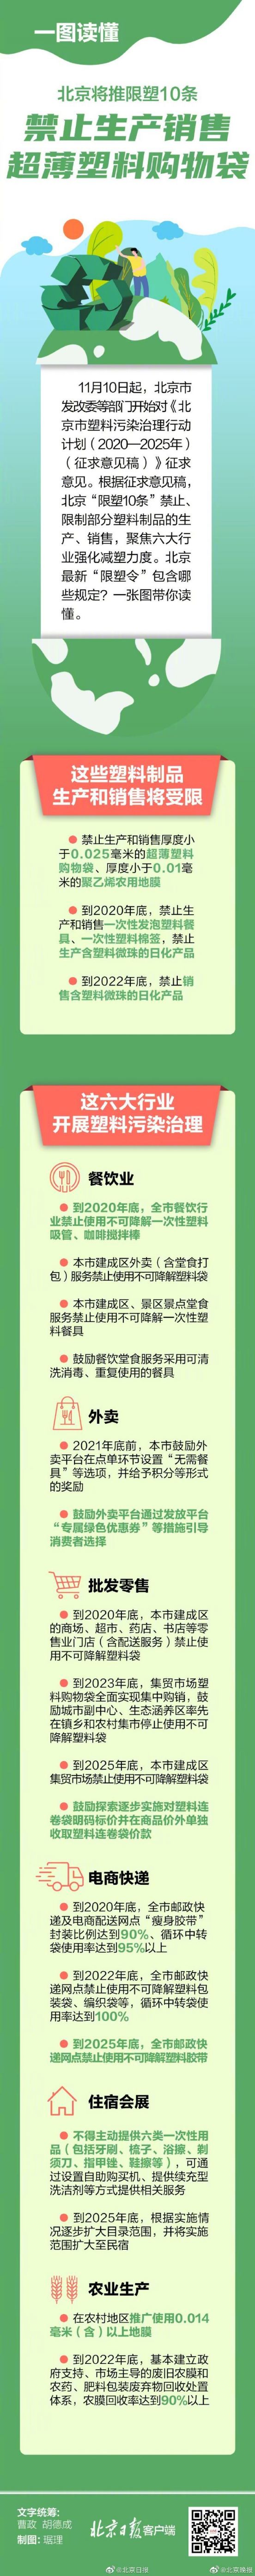 北京发布限塑10条将禁生产销售超薄塑料购物袋